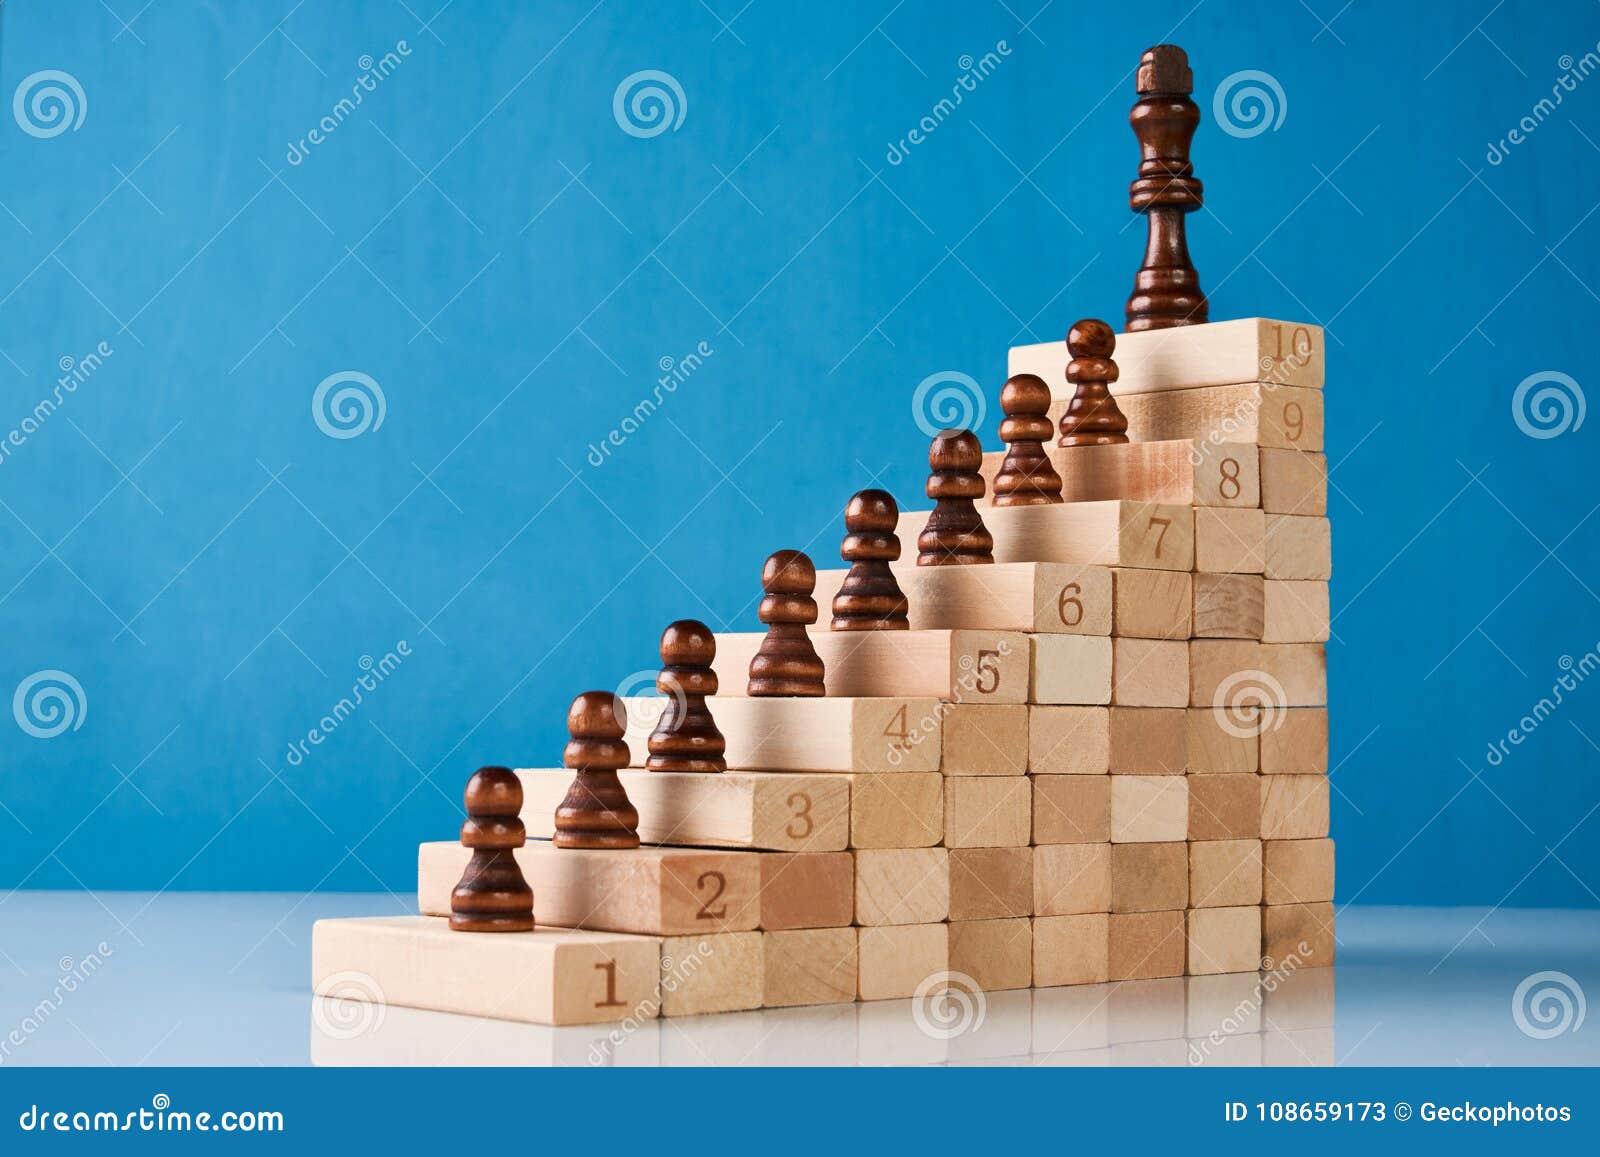 Man Made Chess HD Wallpaper